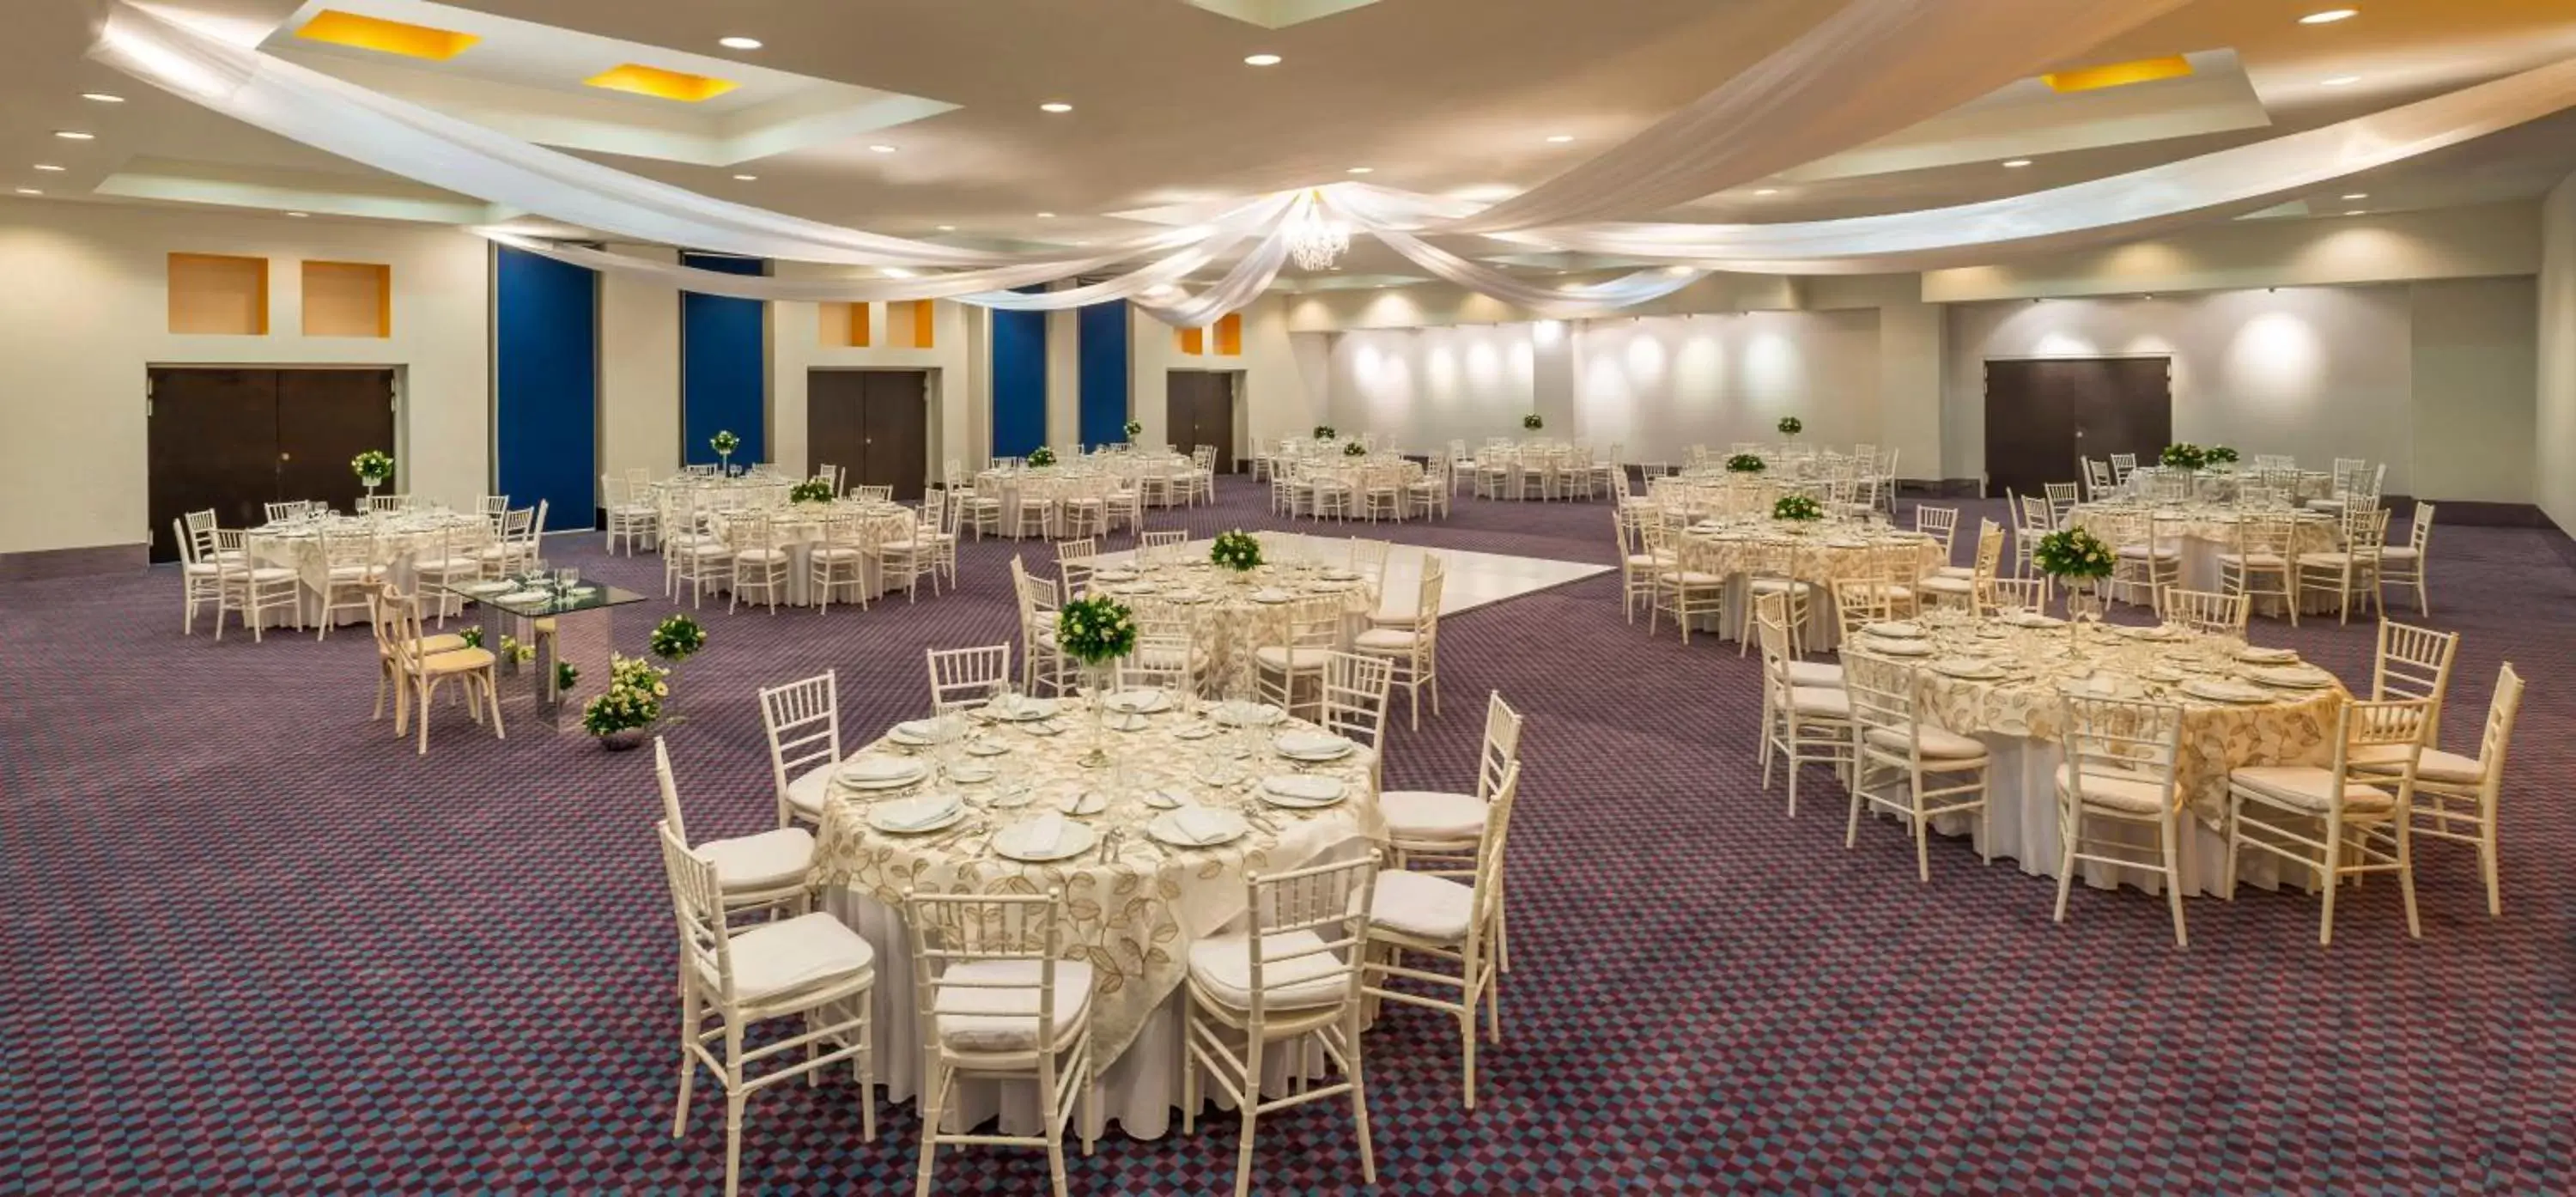 Banquet/Function facilities, Banquet Facilities in Camino Real Veracruz